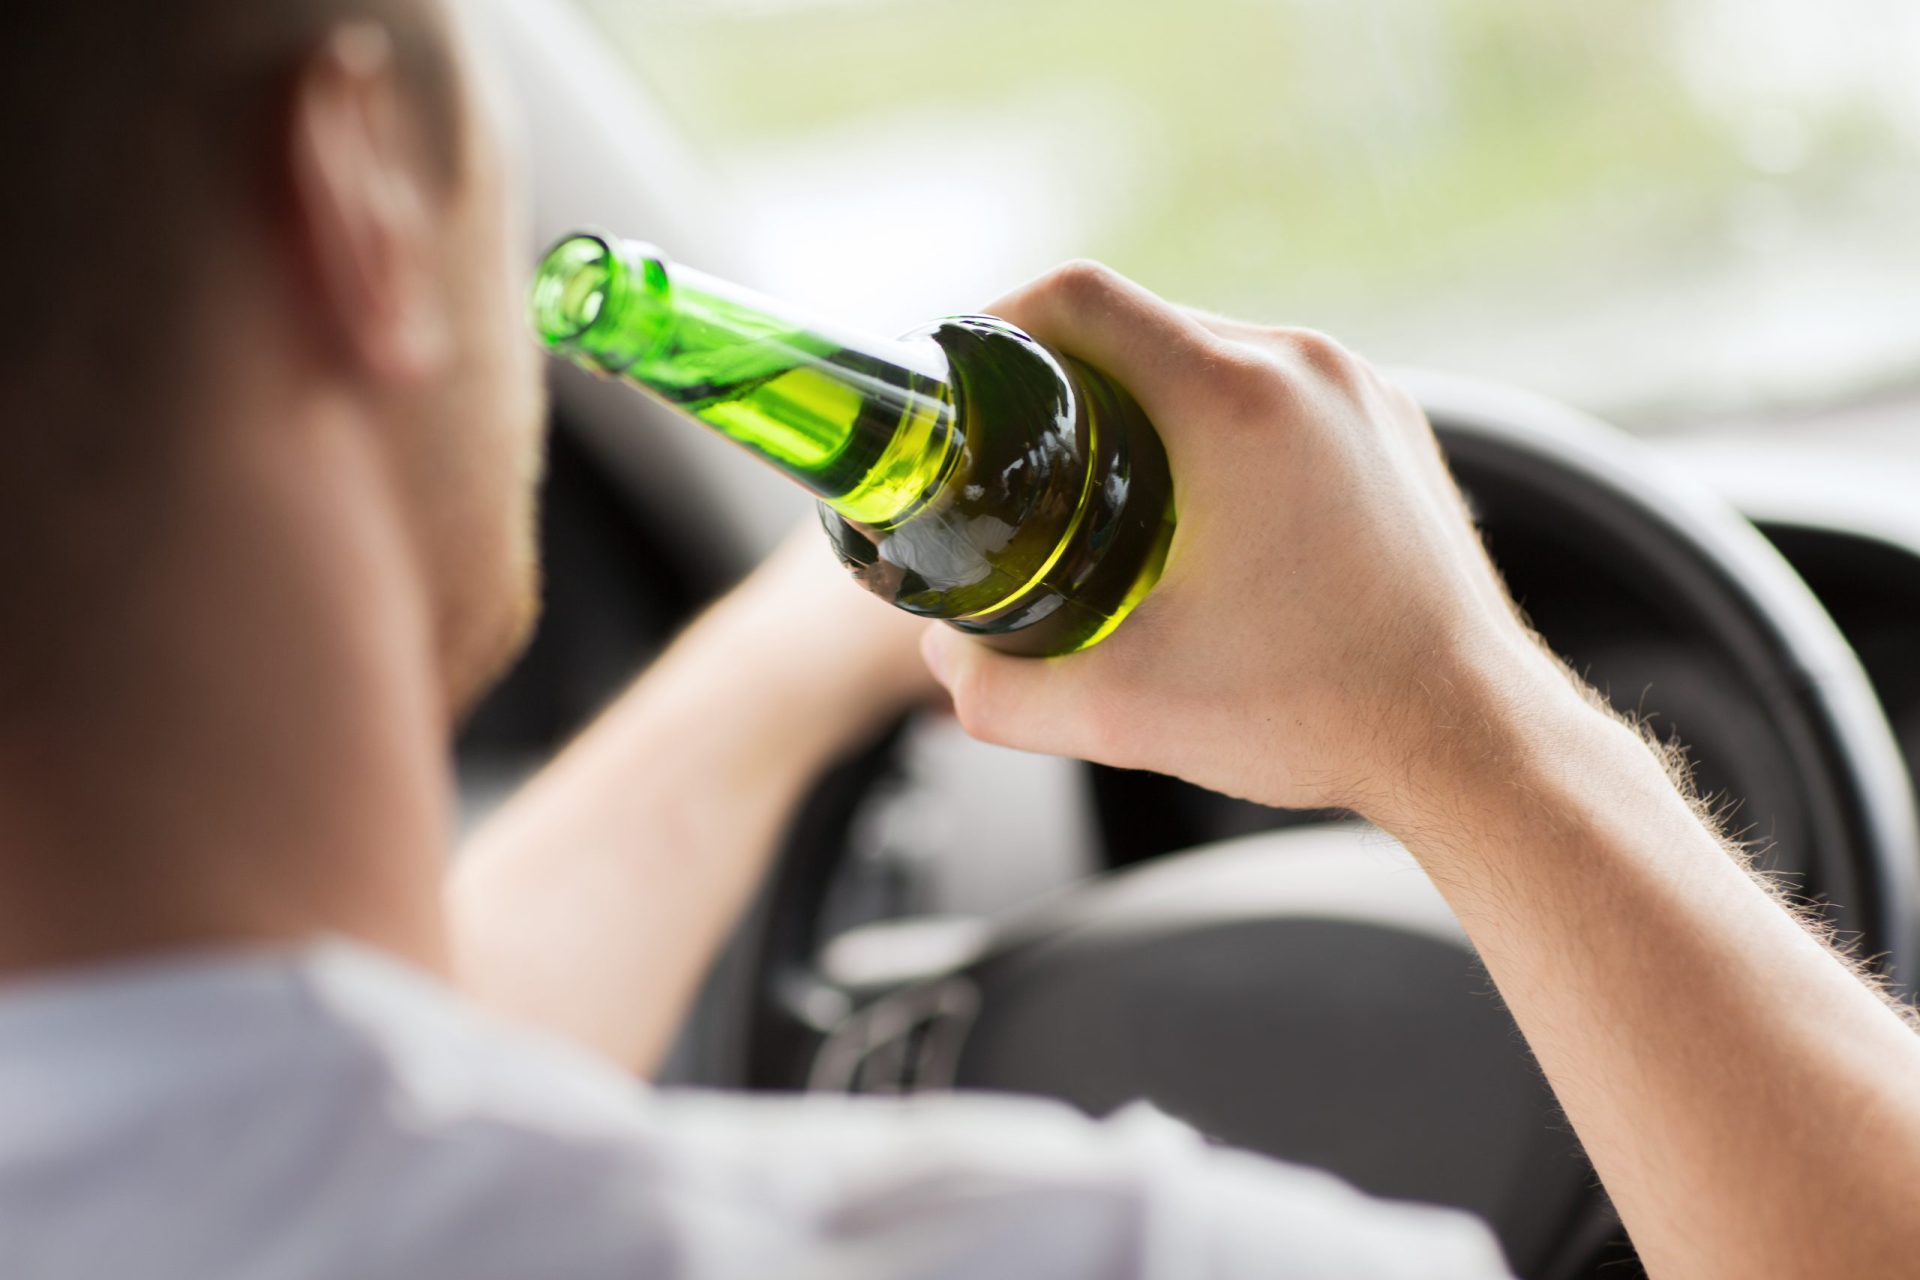 O que é pior: Conduzir alcoolizado ou drogado?